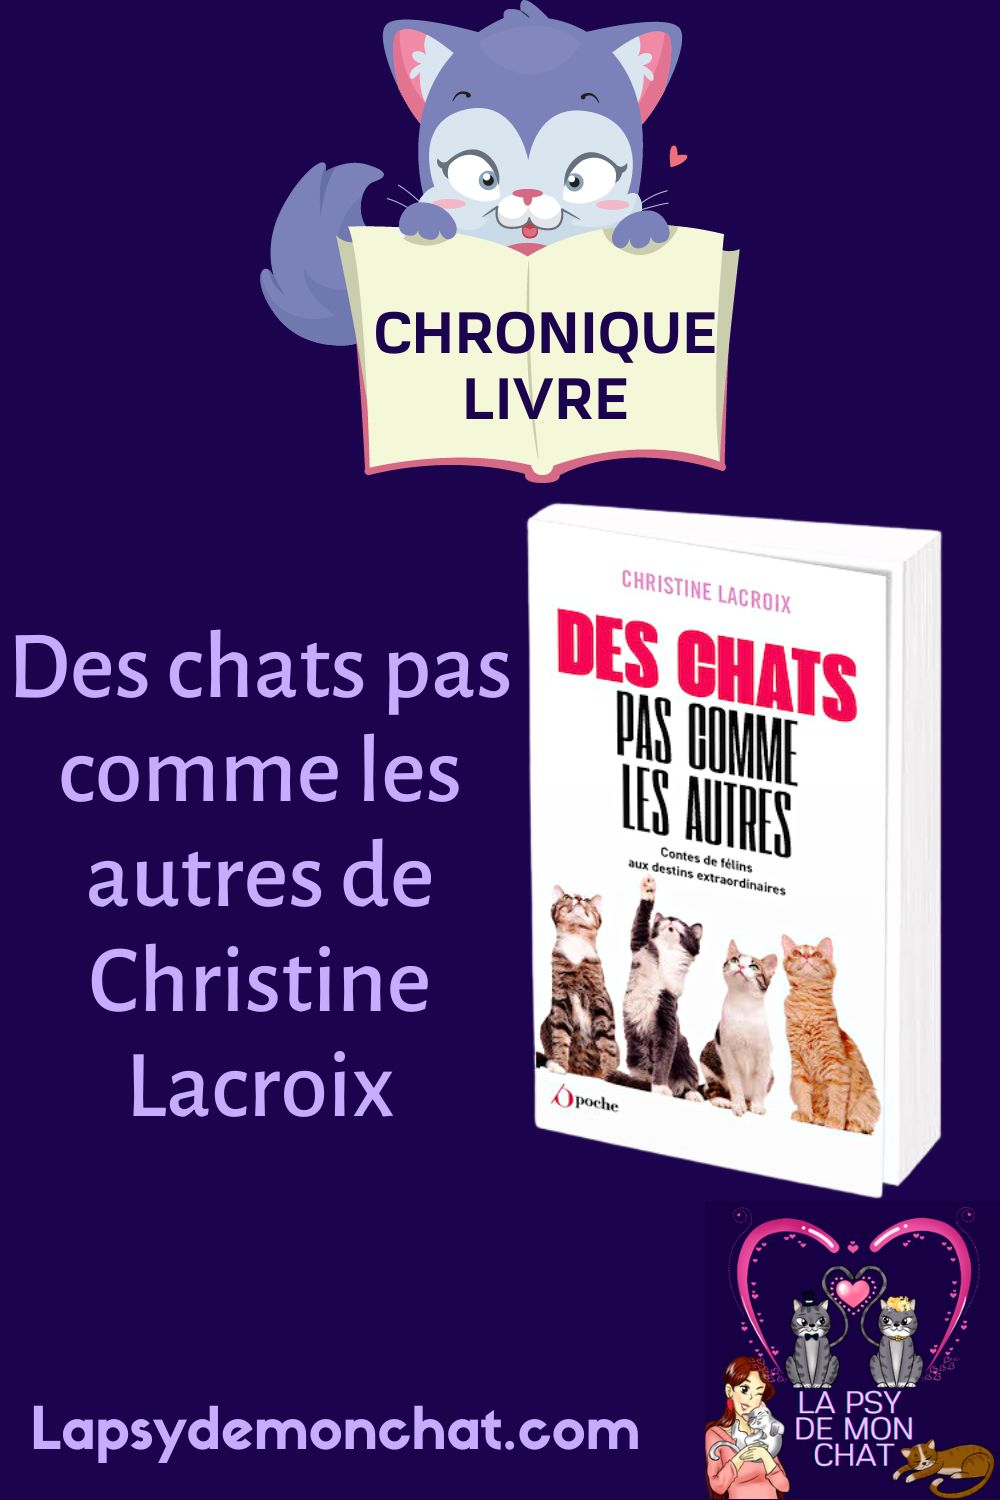 Des chats pas comme les autres de Christine Lacroix - pinterest